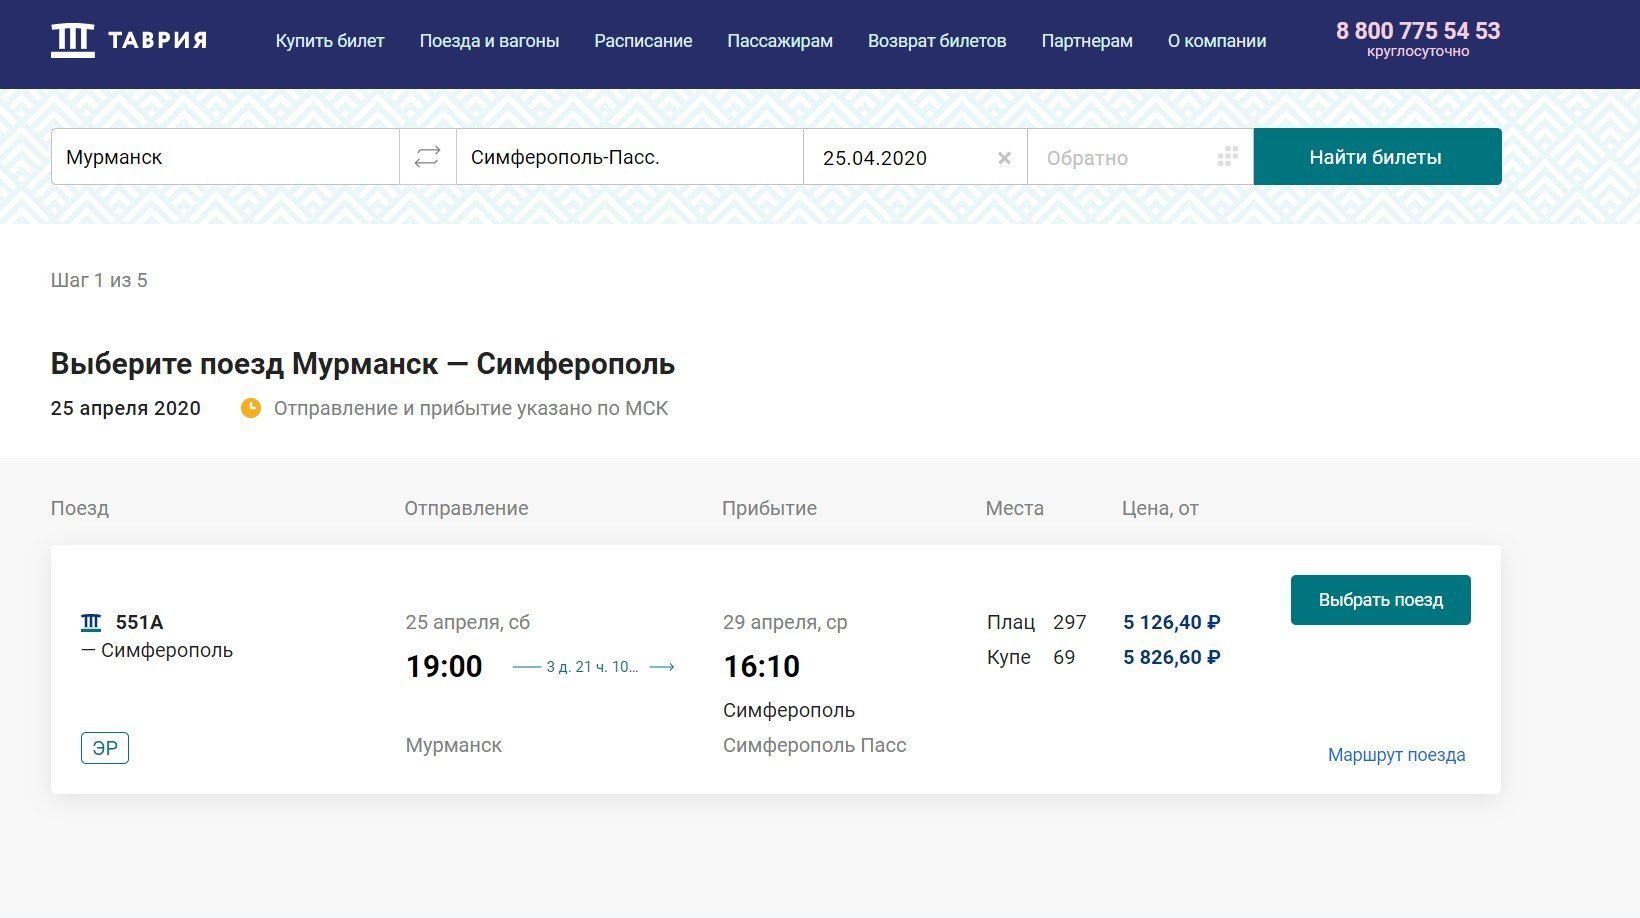 Продажа билетов на поезд Мурманск - Симферополь